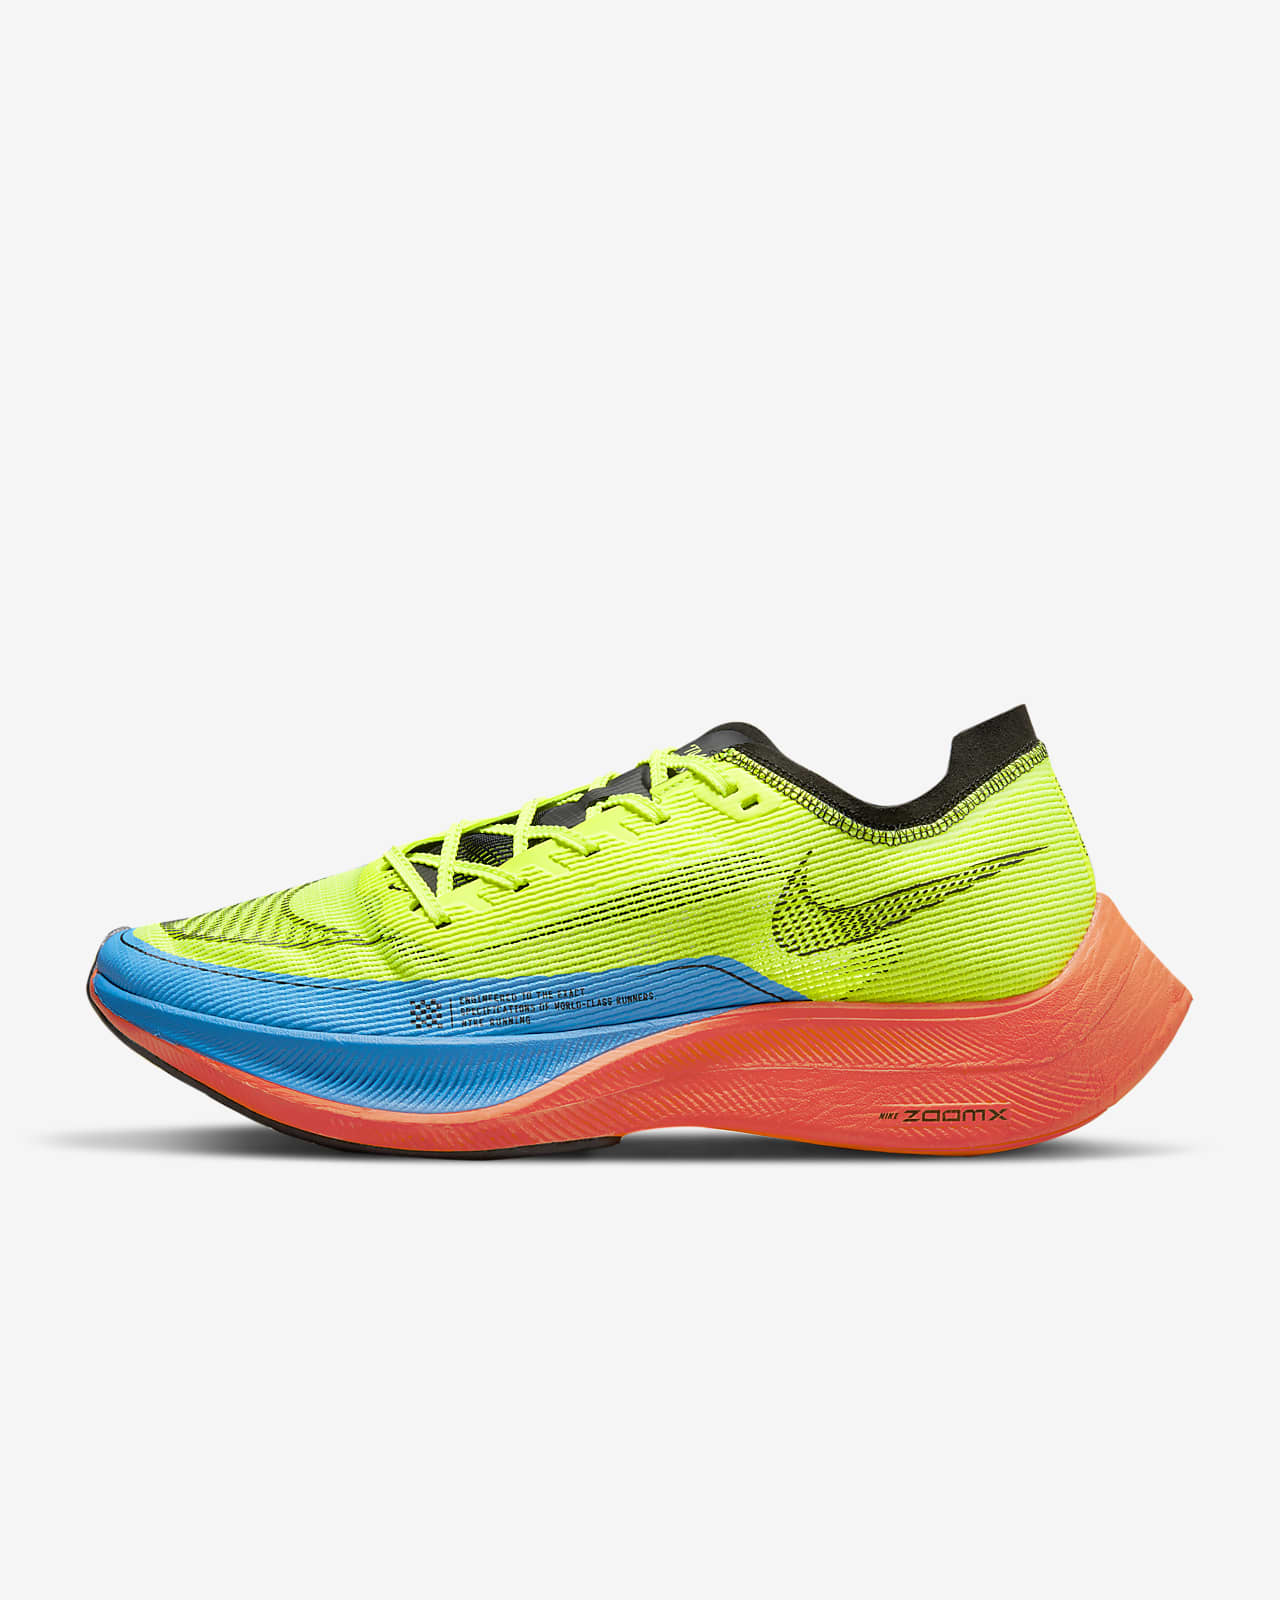 Ανδρικό παπούτσι αγώνων δρόμου Nike ZoomX Vaporfly NEXT% 2